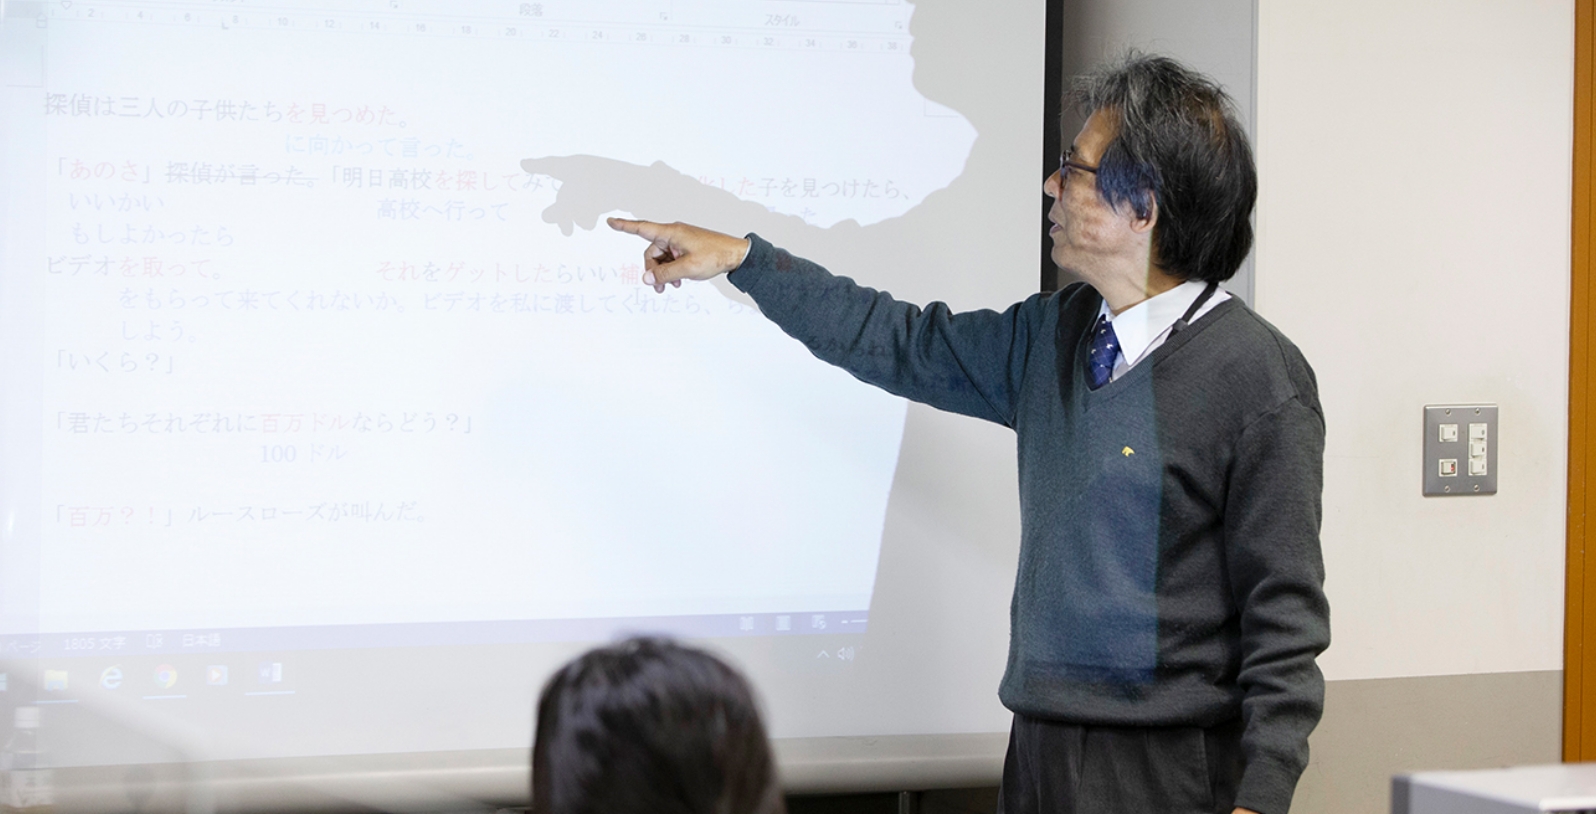 「翻訳」技術の基礎を学ぶ。大阪外語専門学校、翻訳基礎専攻